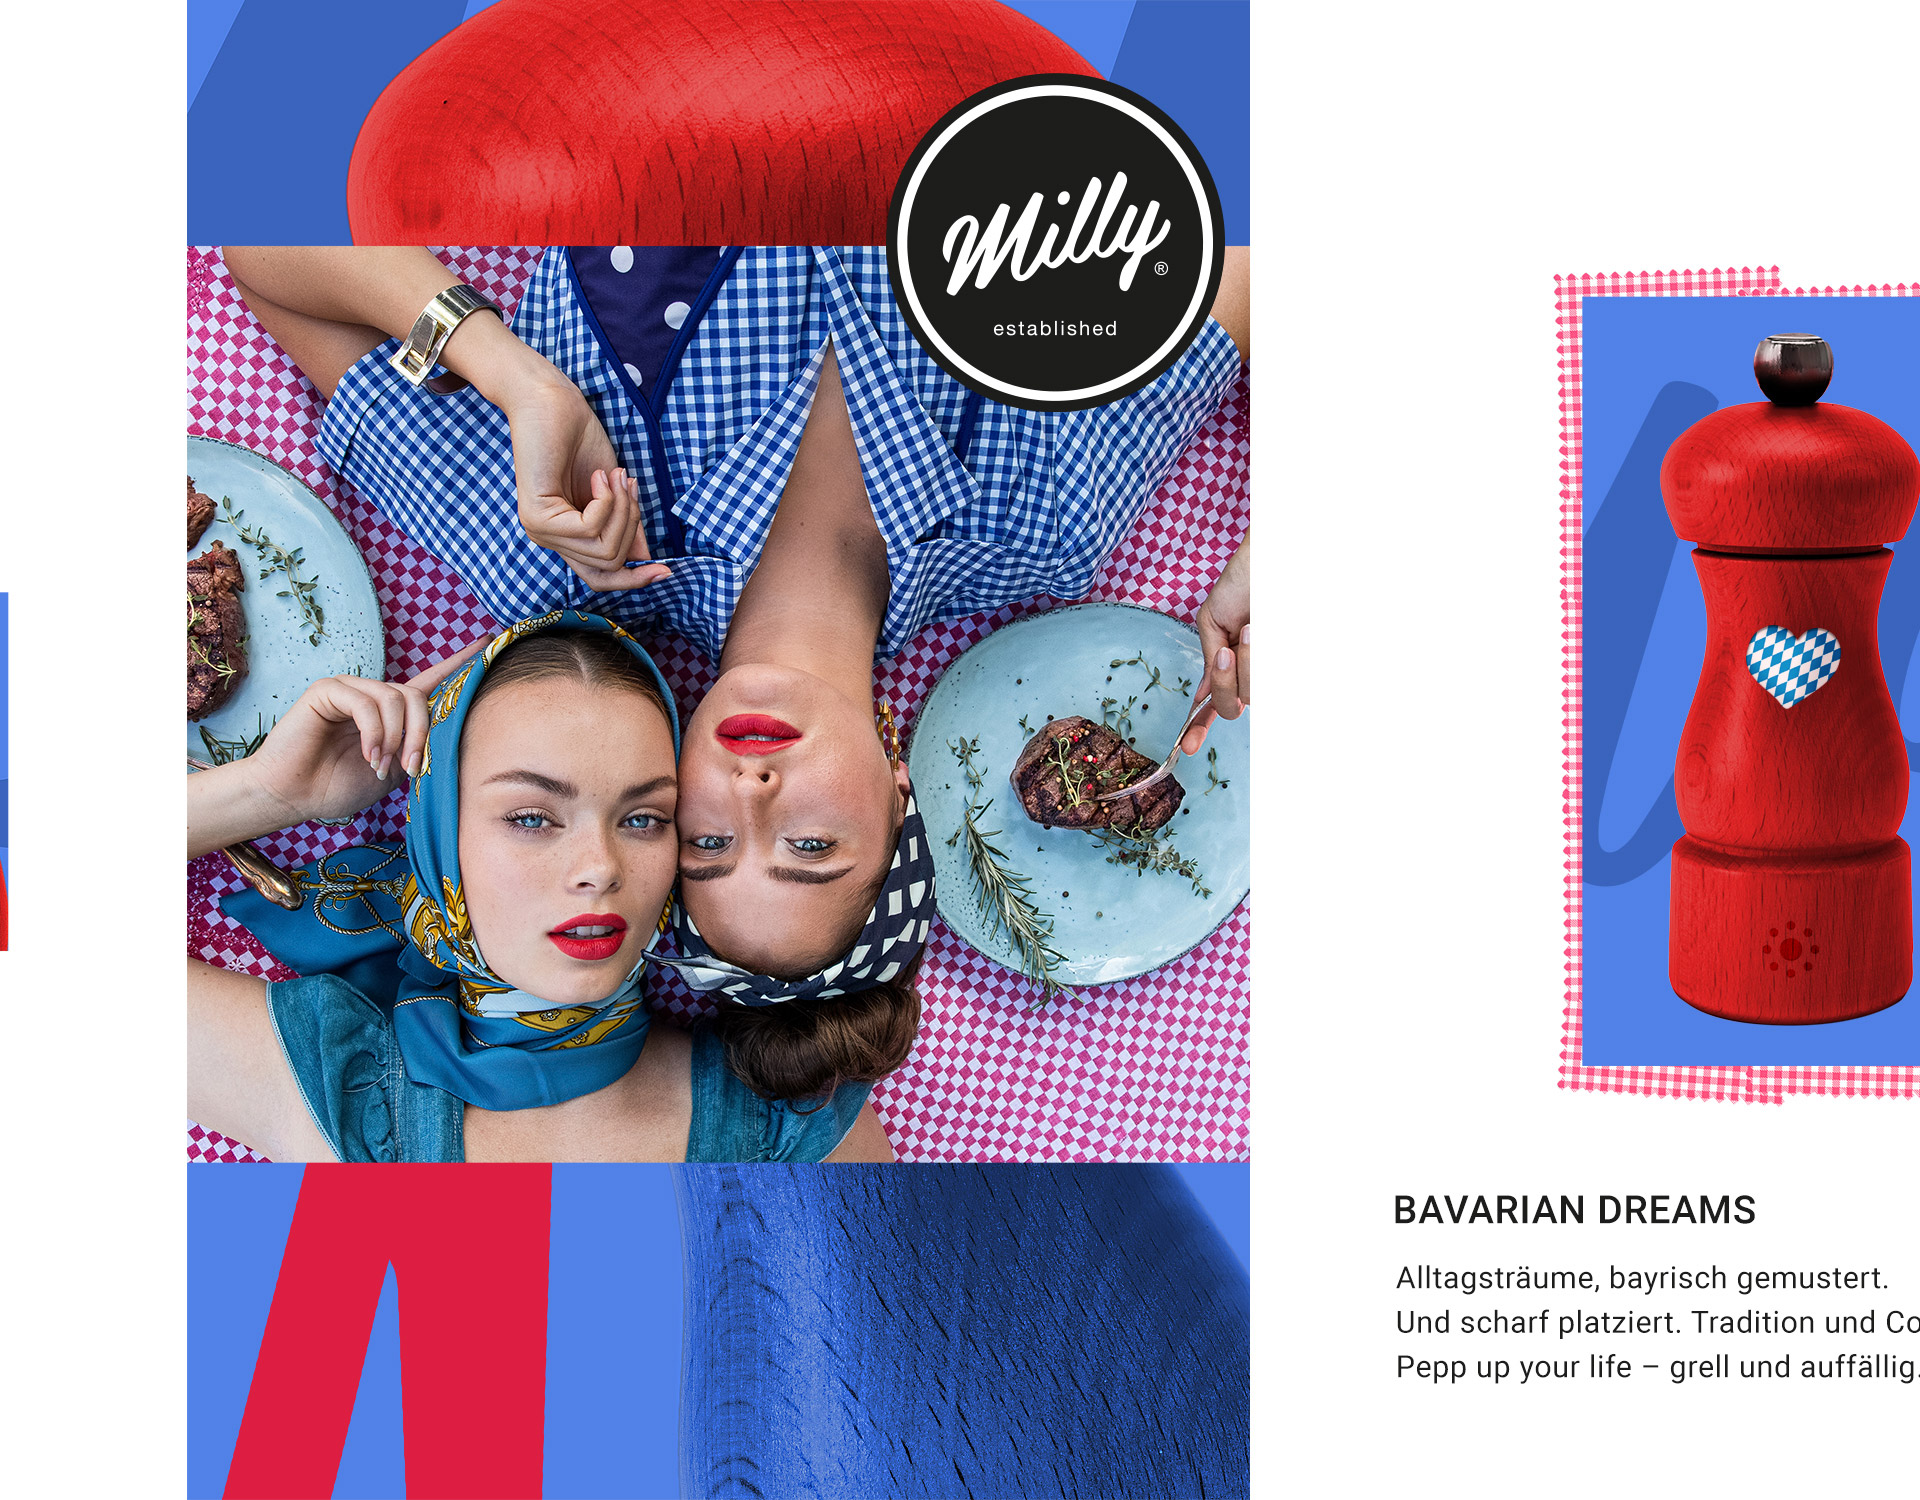 Fotokonzept und Werbekampagne für Milly, kreiert bei P12-Fresh-Werbeagentur